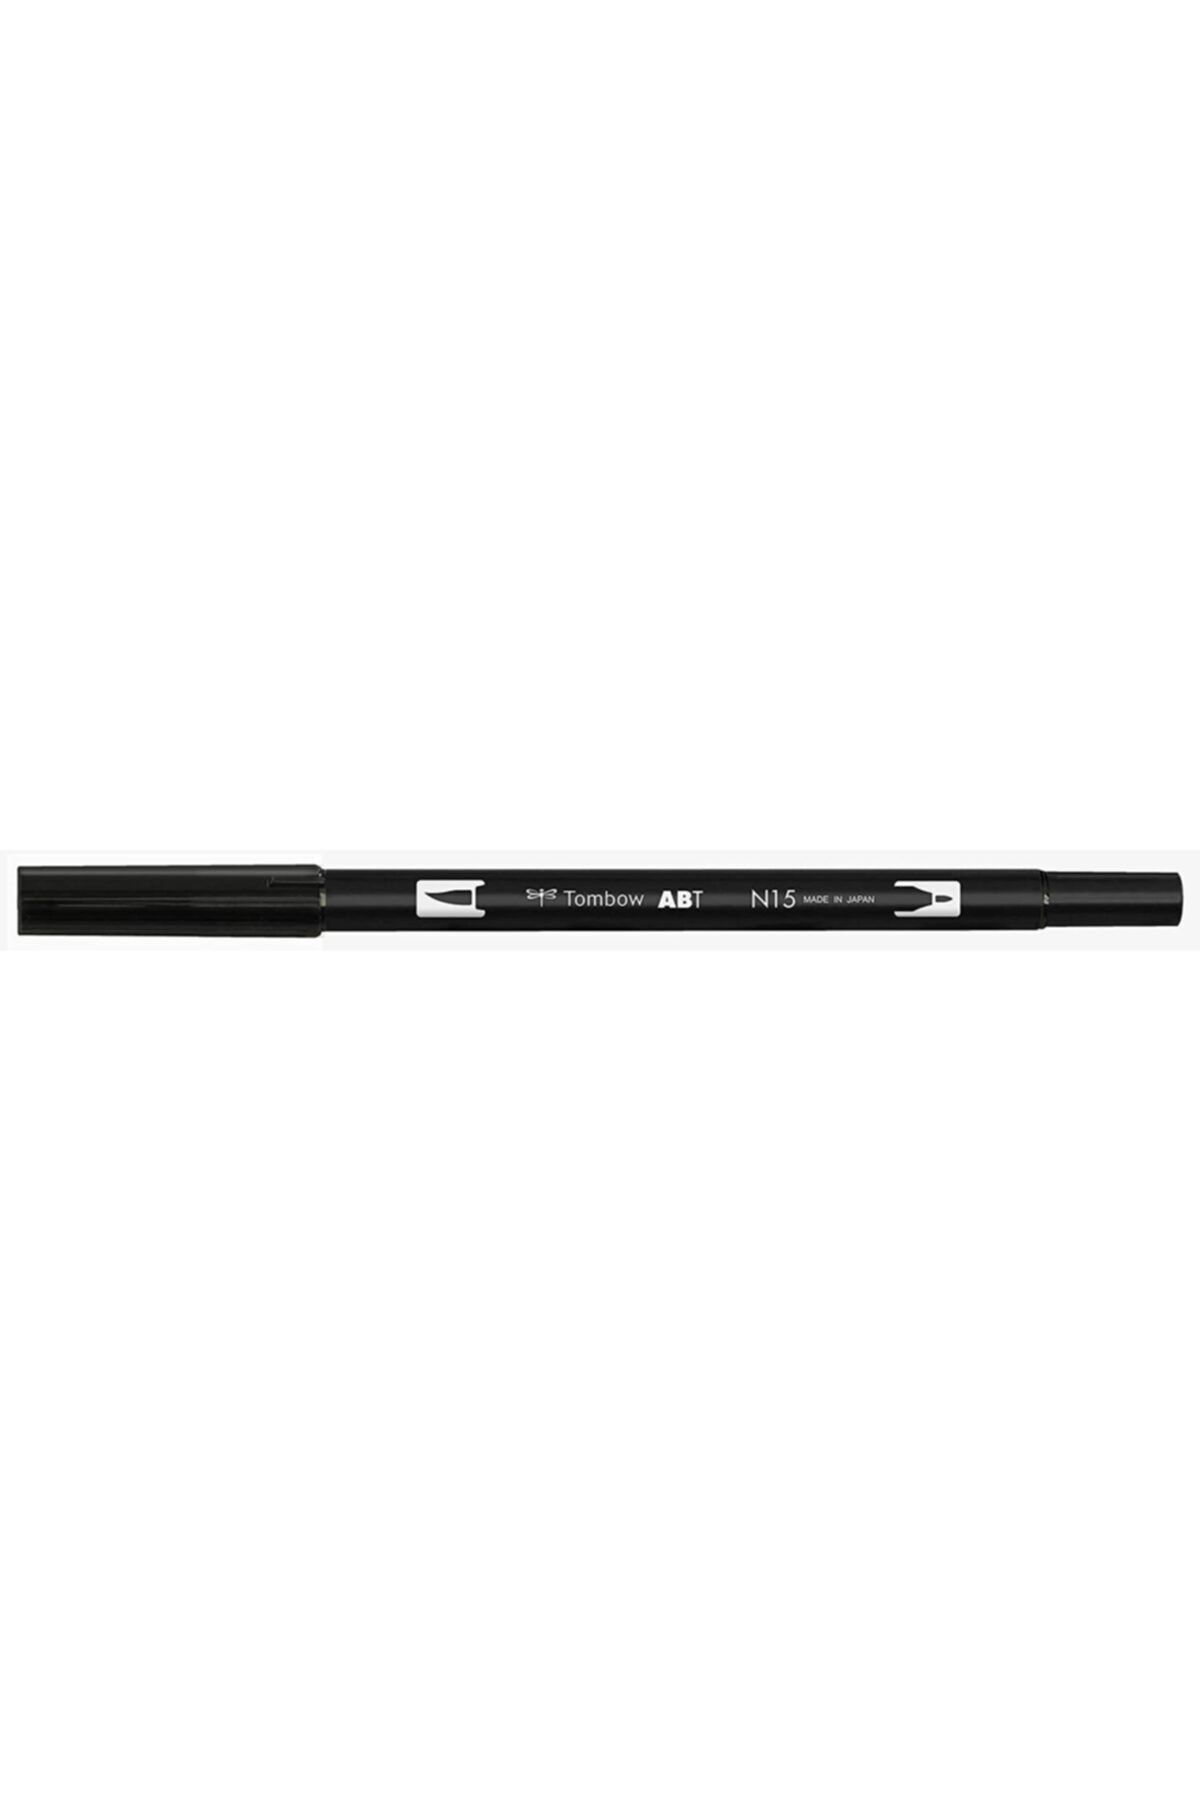 Bic Tombow Ab-t Dual Brush Pen - Black - N15